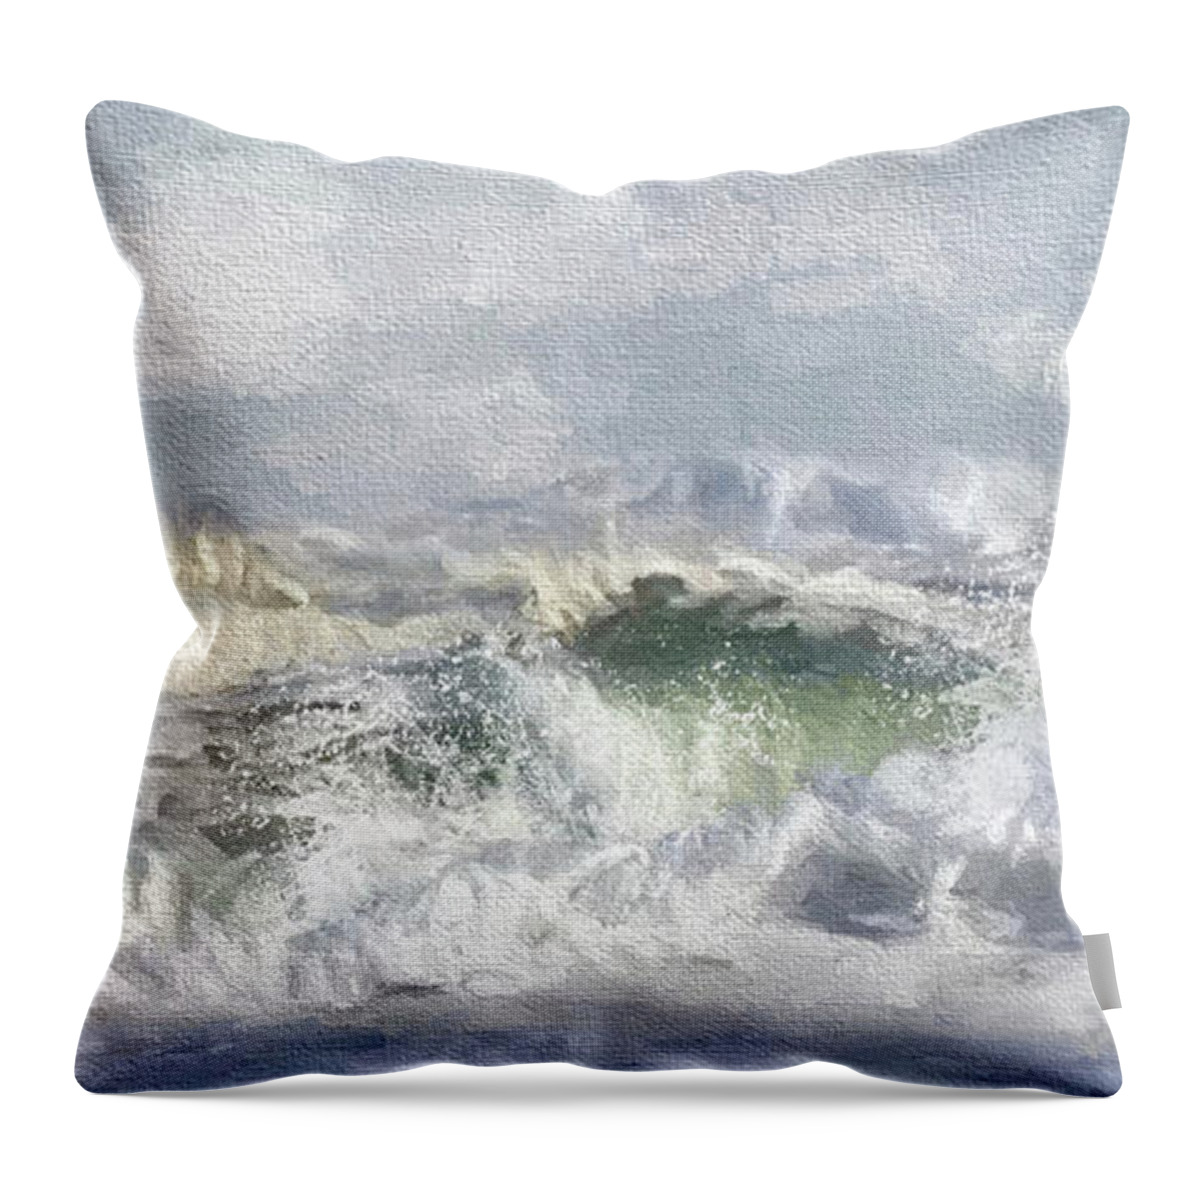 Ocean Throw Pillow featuring the photograph Big Surf by Karen Lynch